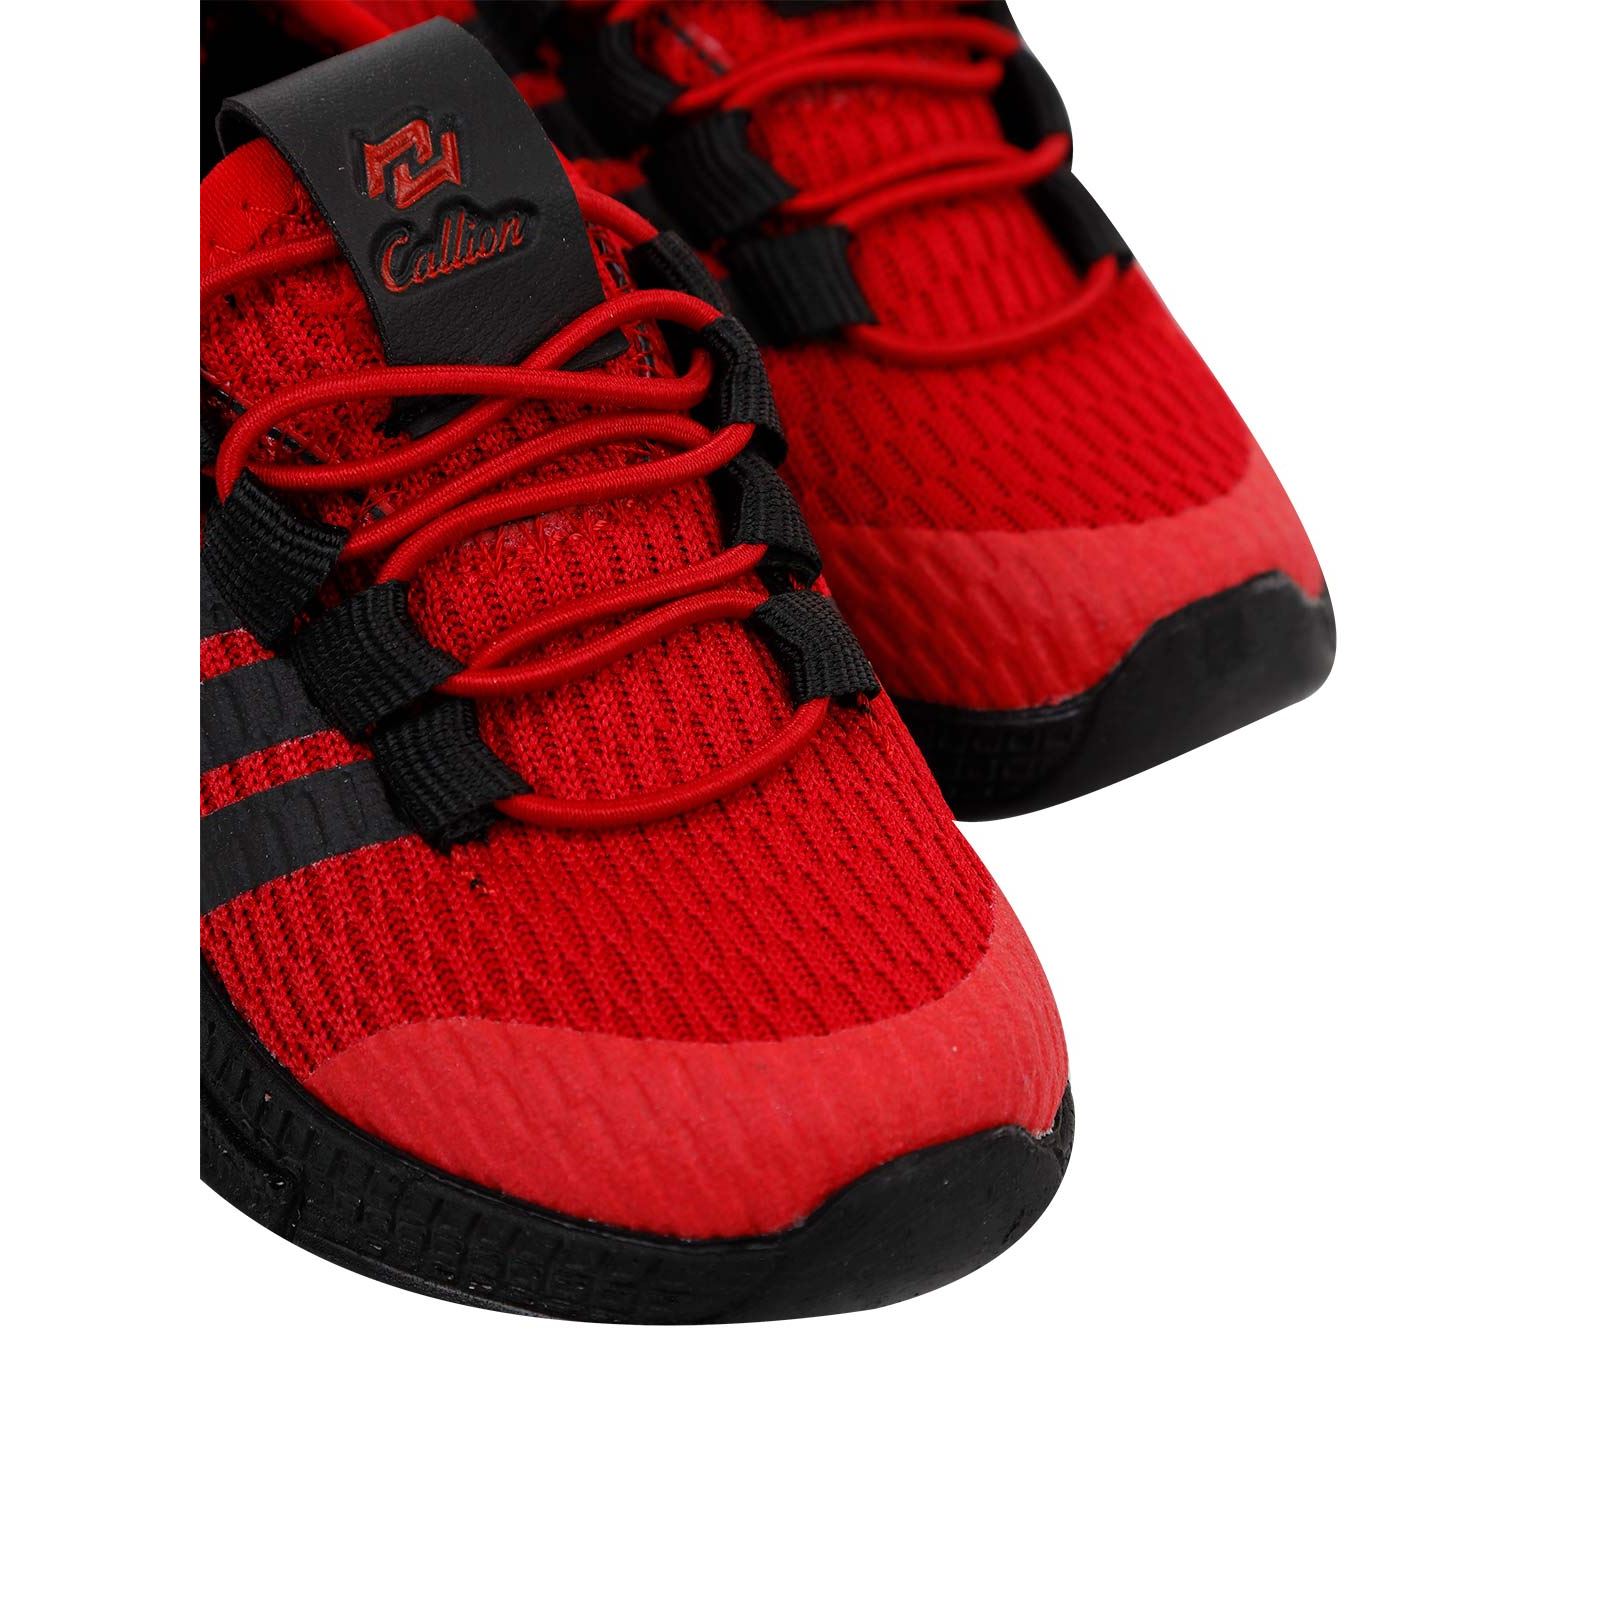 Callion Erkek Çocuk Spor Ayakkabı 22-25 Numara Kırmızı